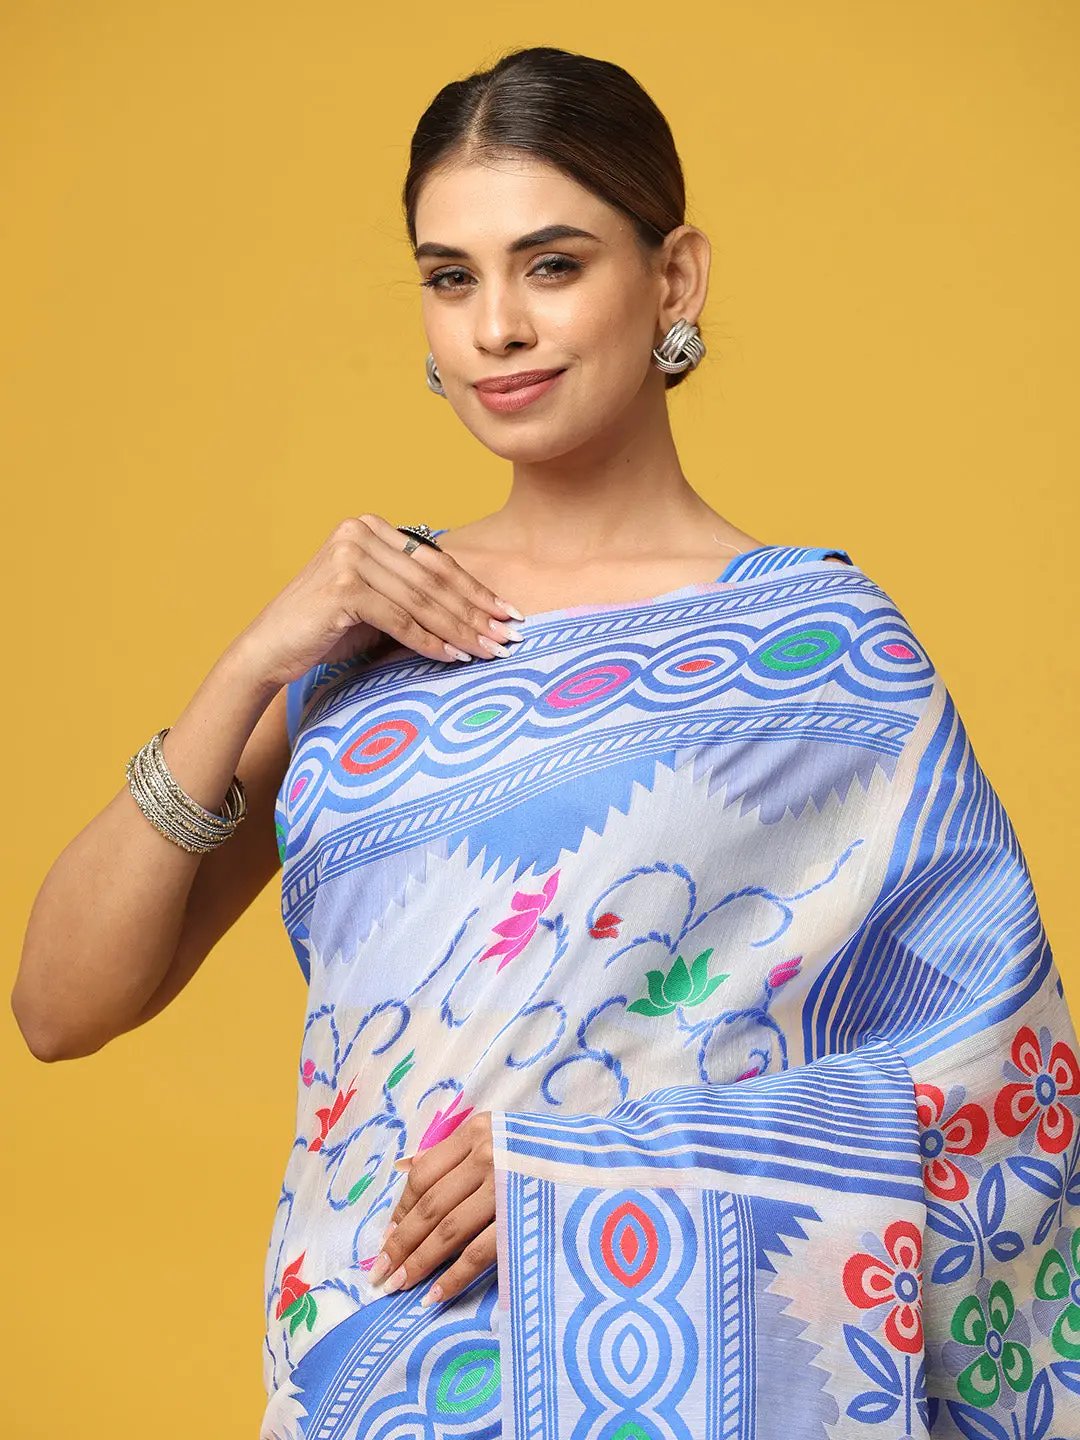  Dhakai Jamdani Cotton Silk Saree